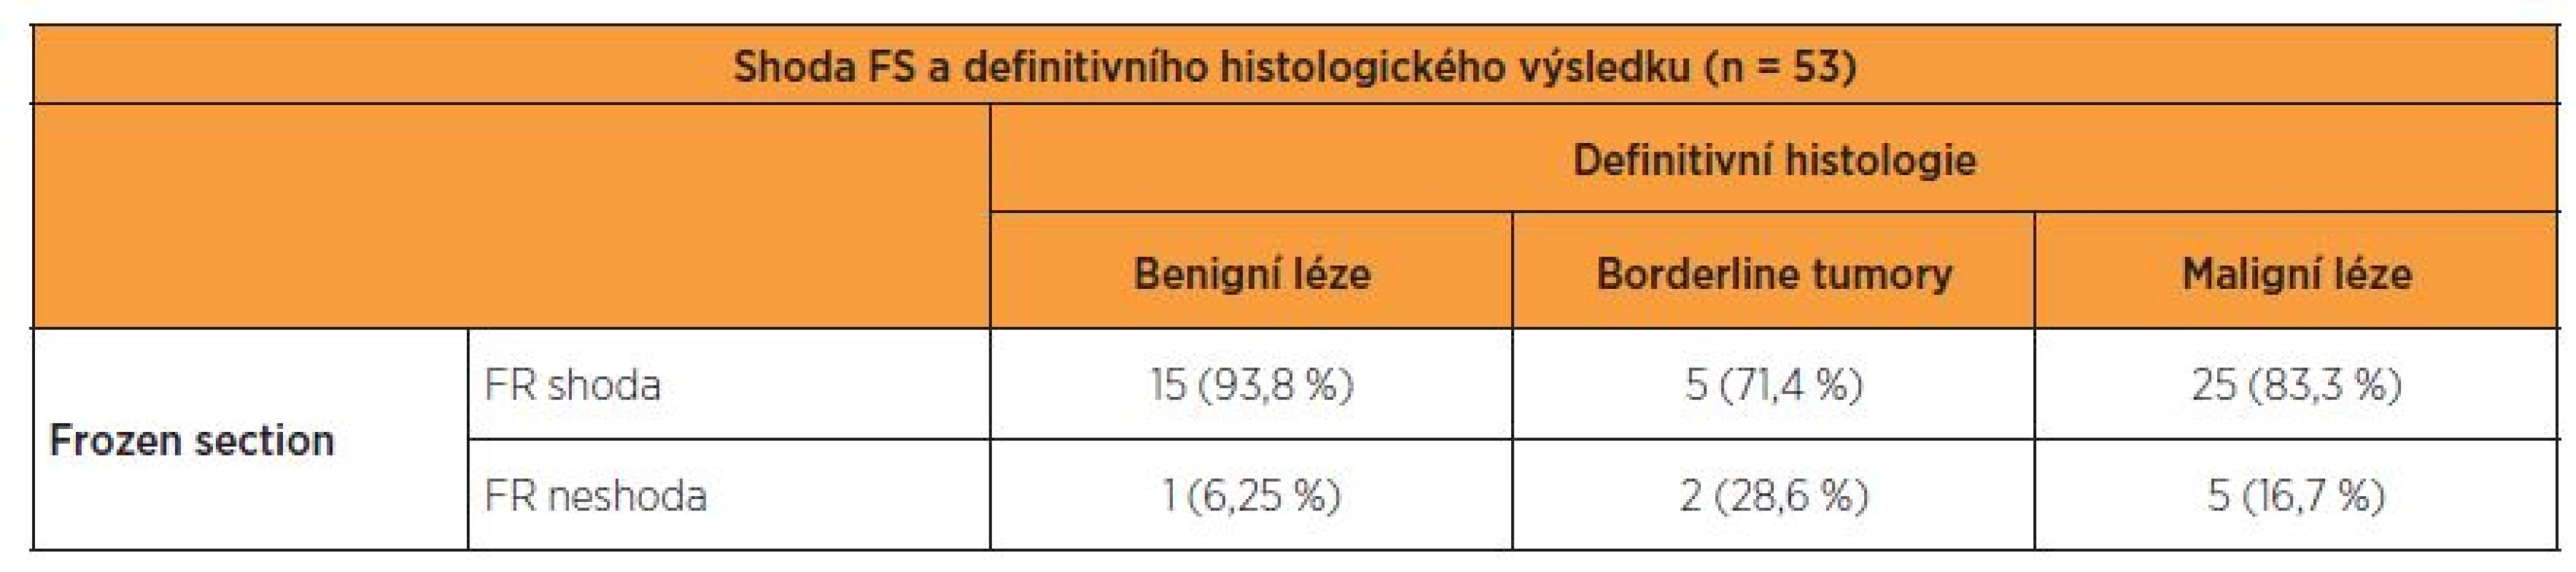 Shoda či neshoda FS a definitivní histopatologie v absolutních číslech a v procentuálním poměru v jednotlivých skupinách